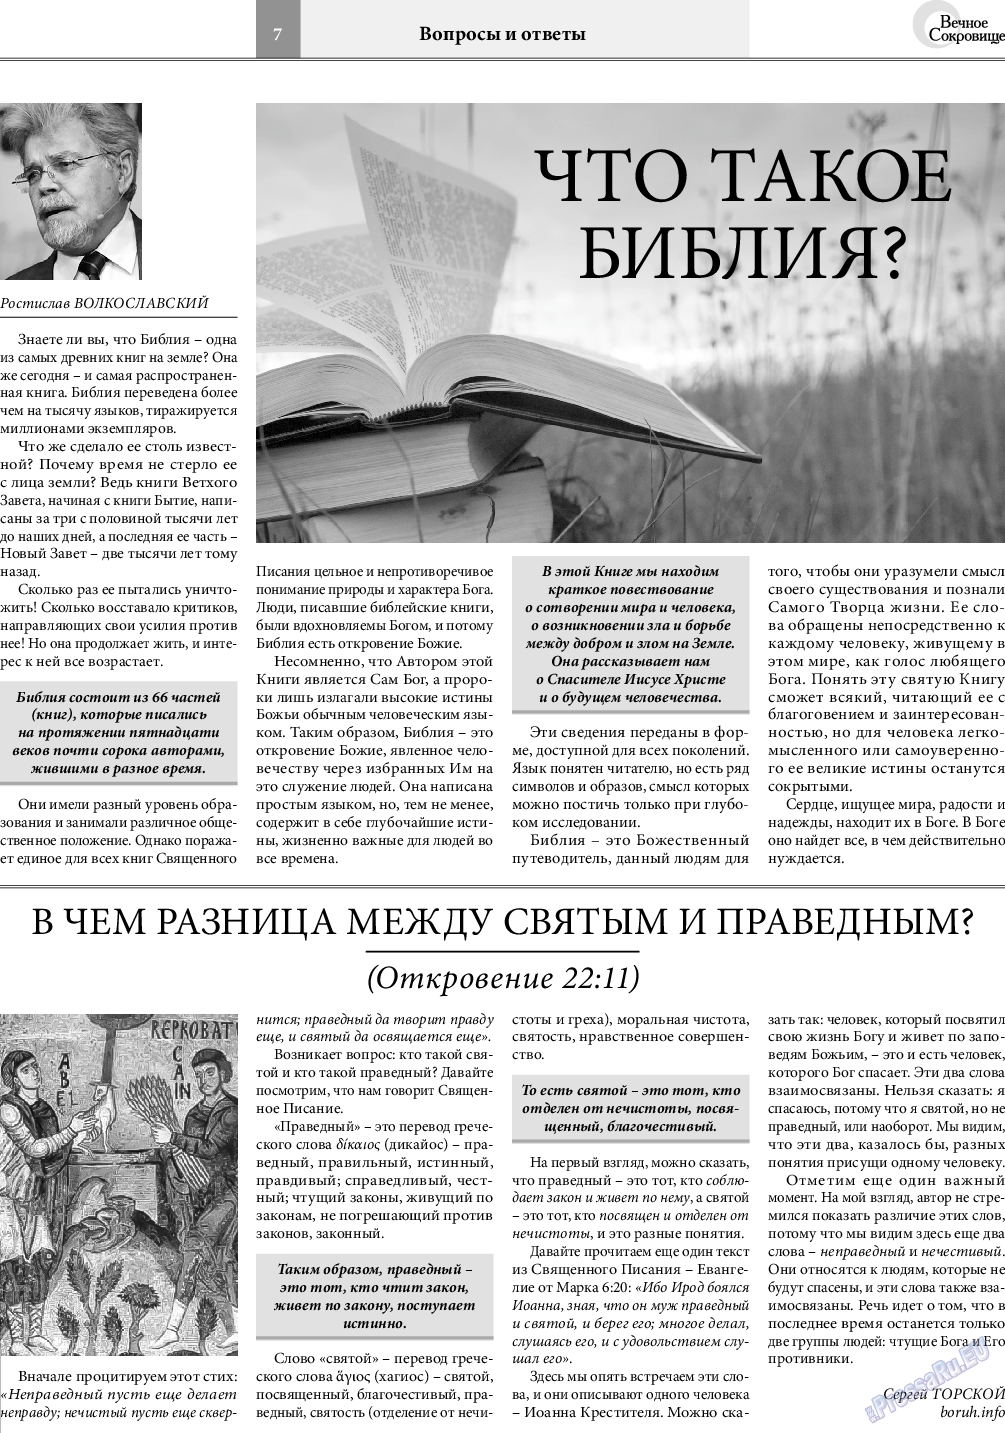 Вечное сокровище, газета. 2021 №4 стр.7